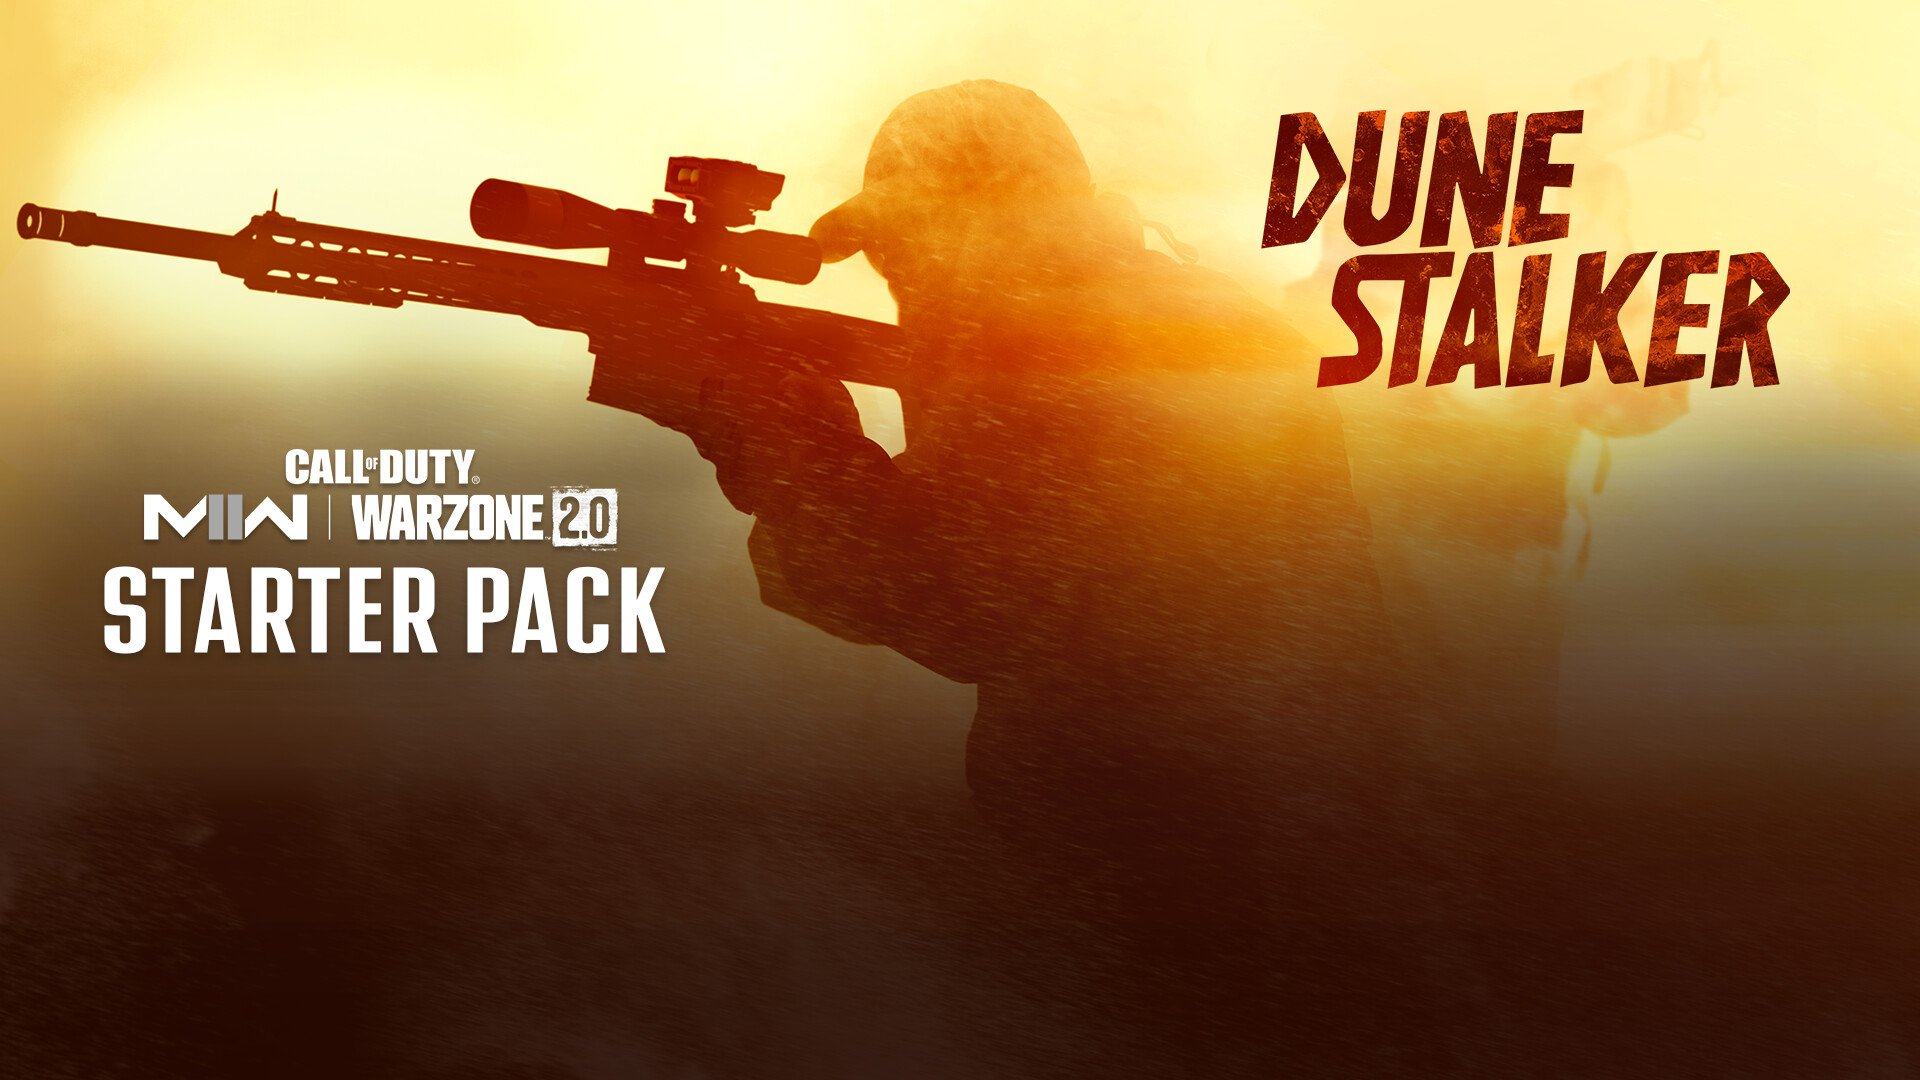 Call of Duty: Modern Warfare II - Dune Stalker: Starter Pack DLC Steam Altergift, $13.93